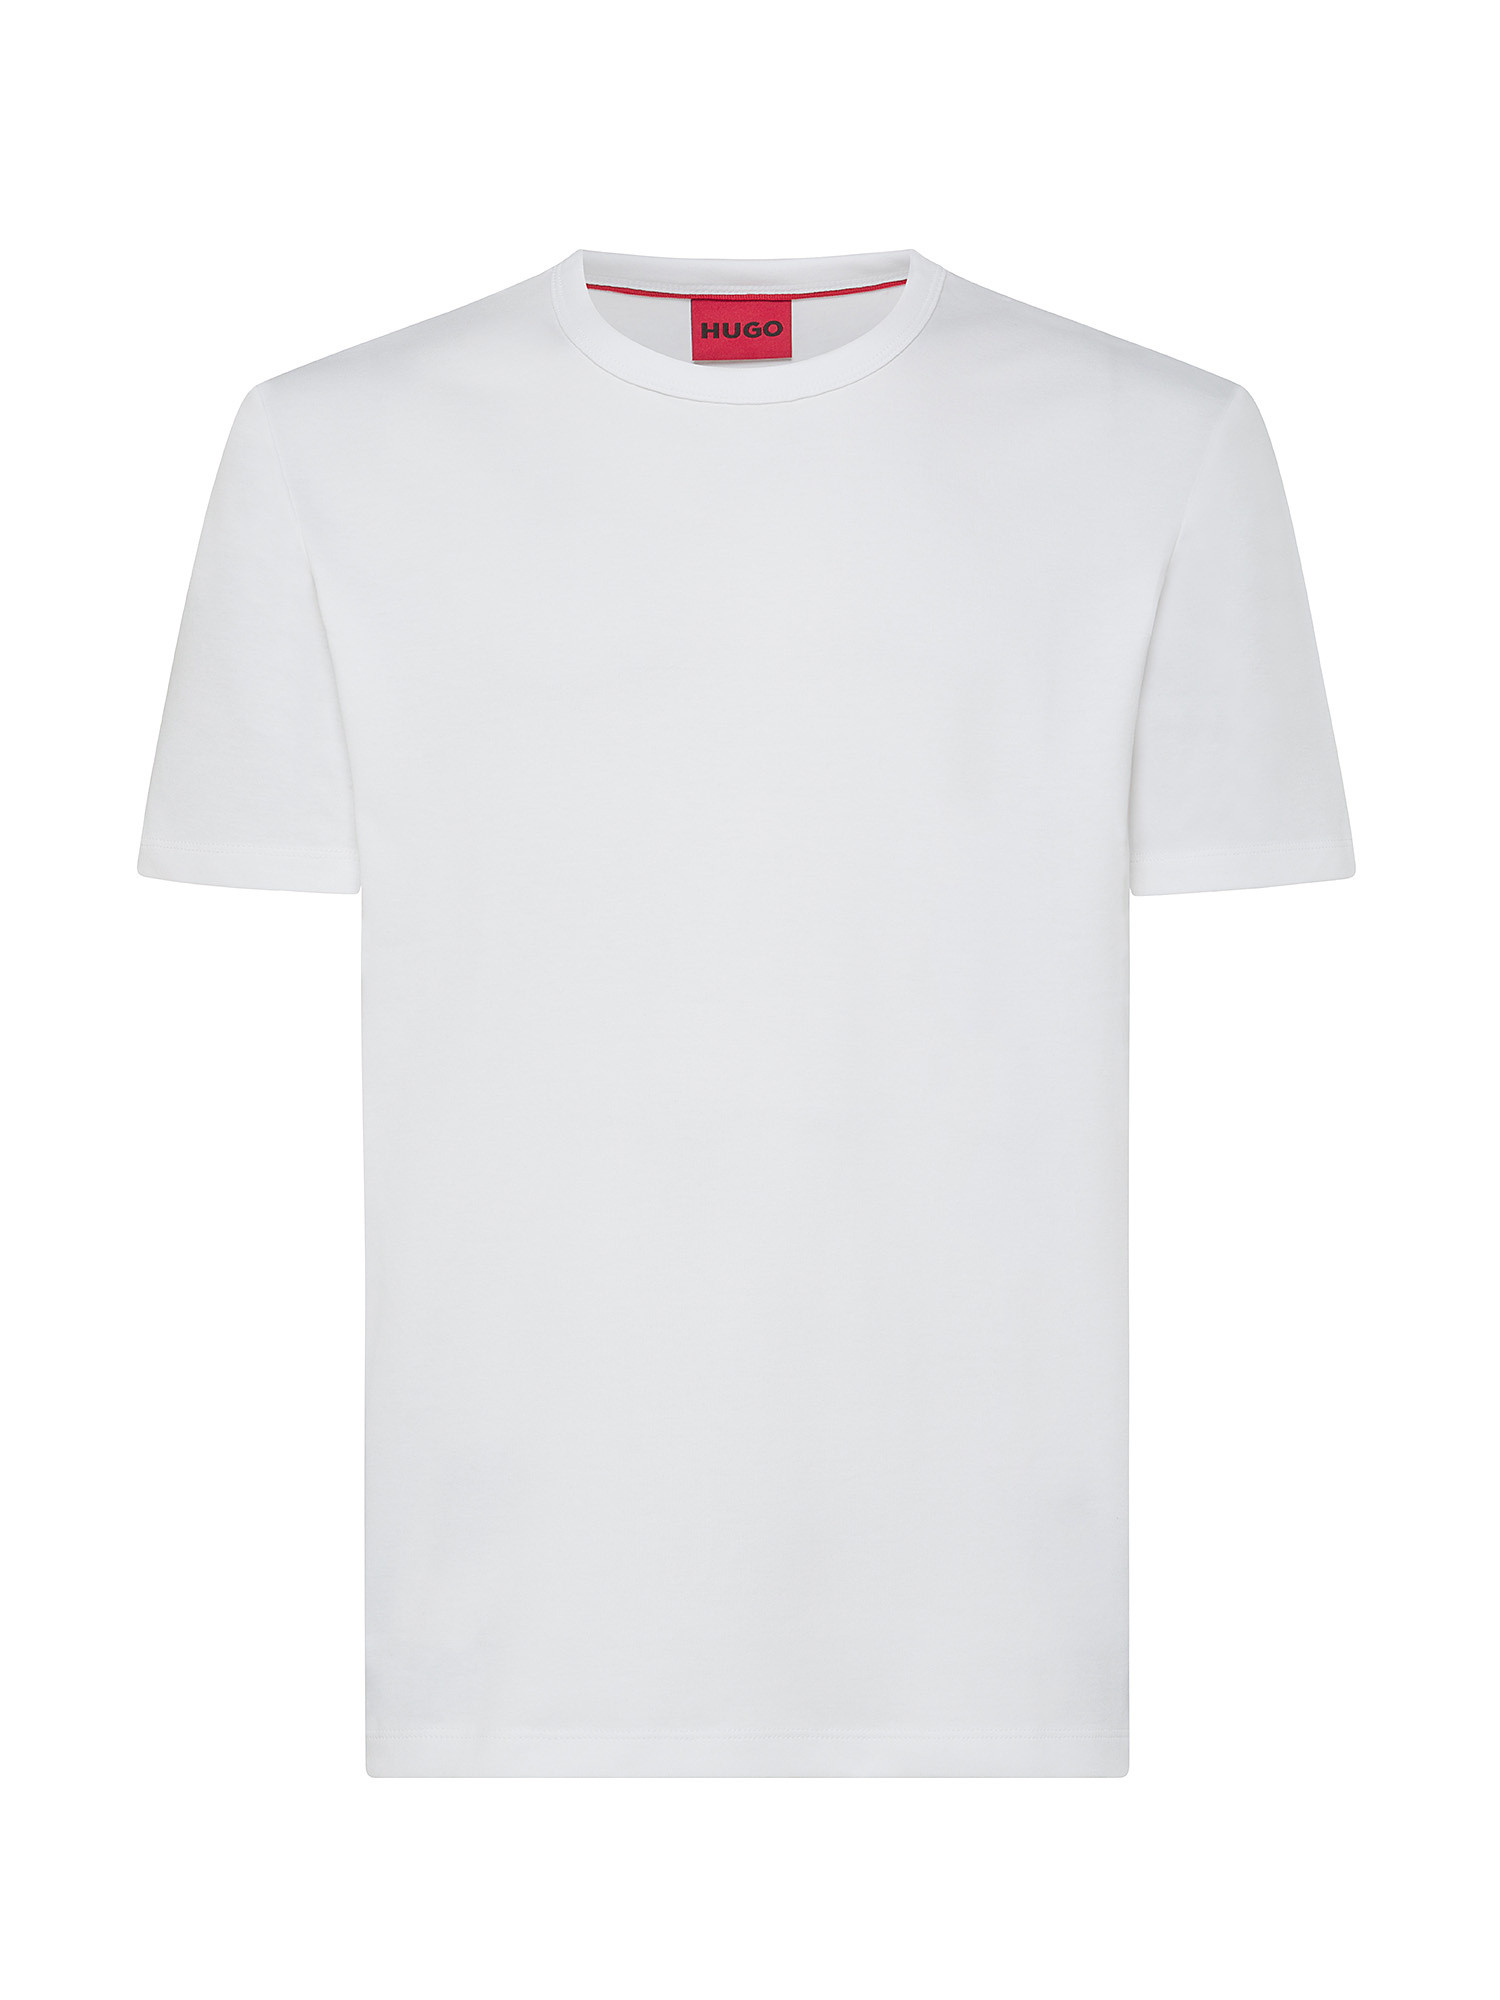 Hugo - Cotton T-Shirt, White, large image number 0